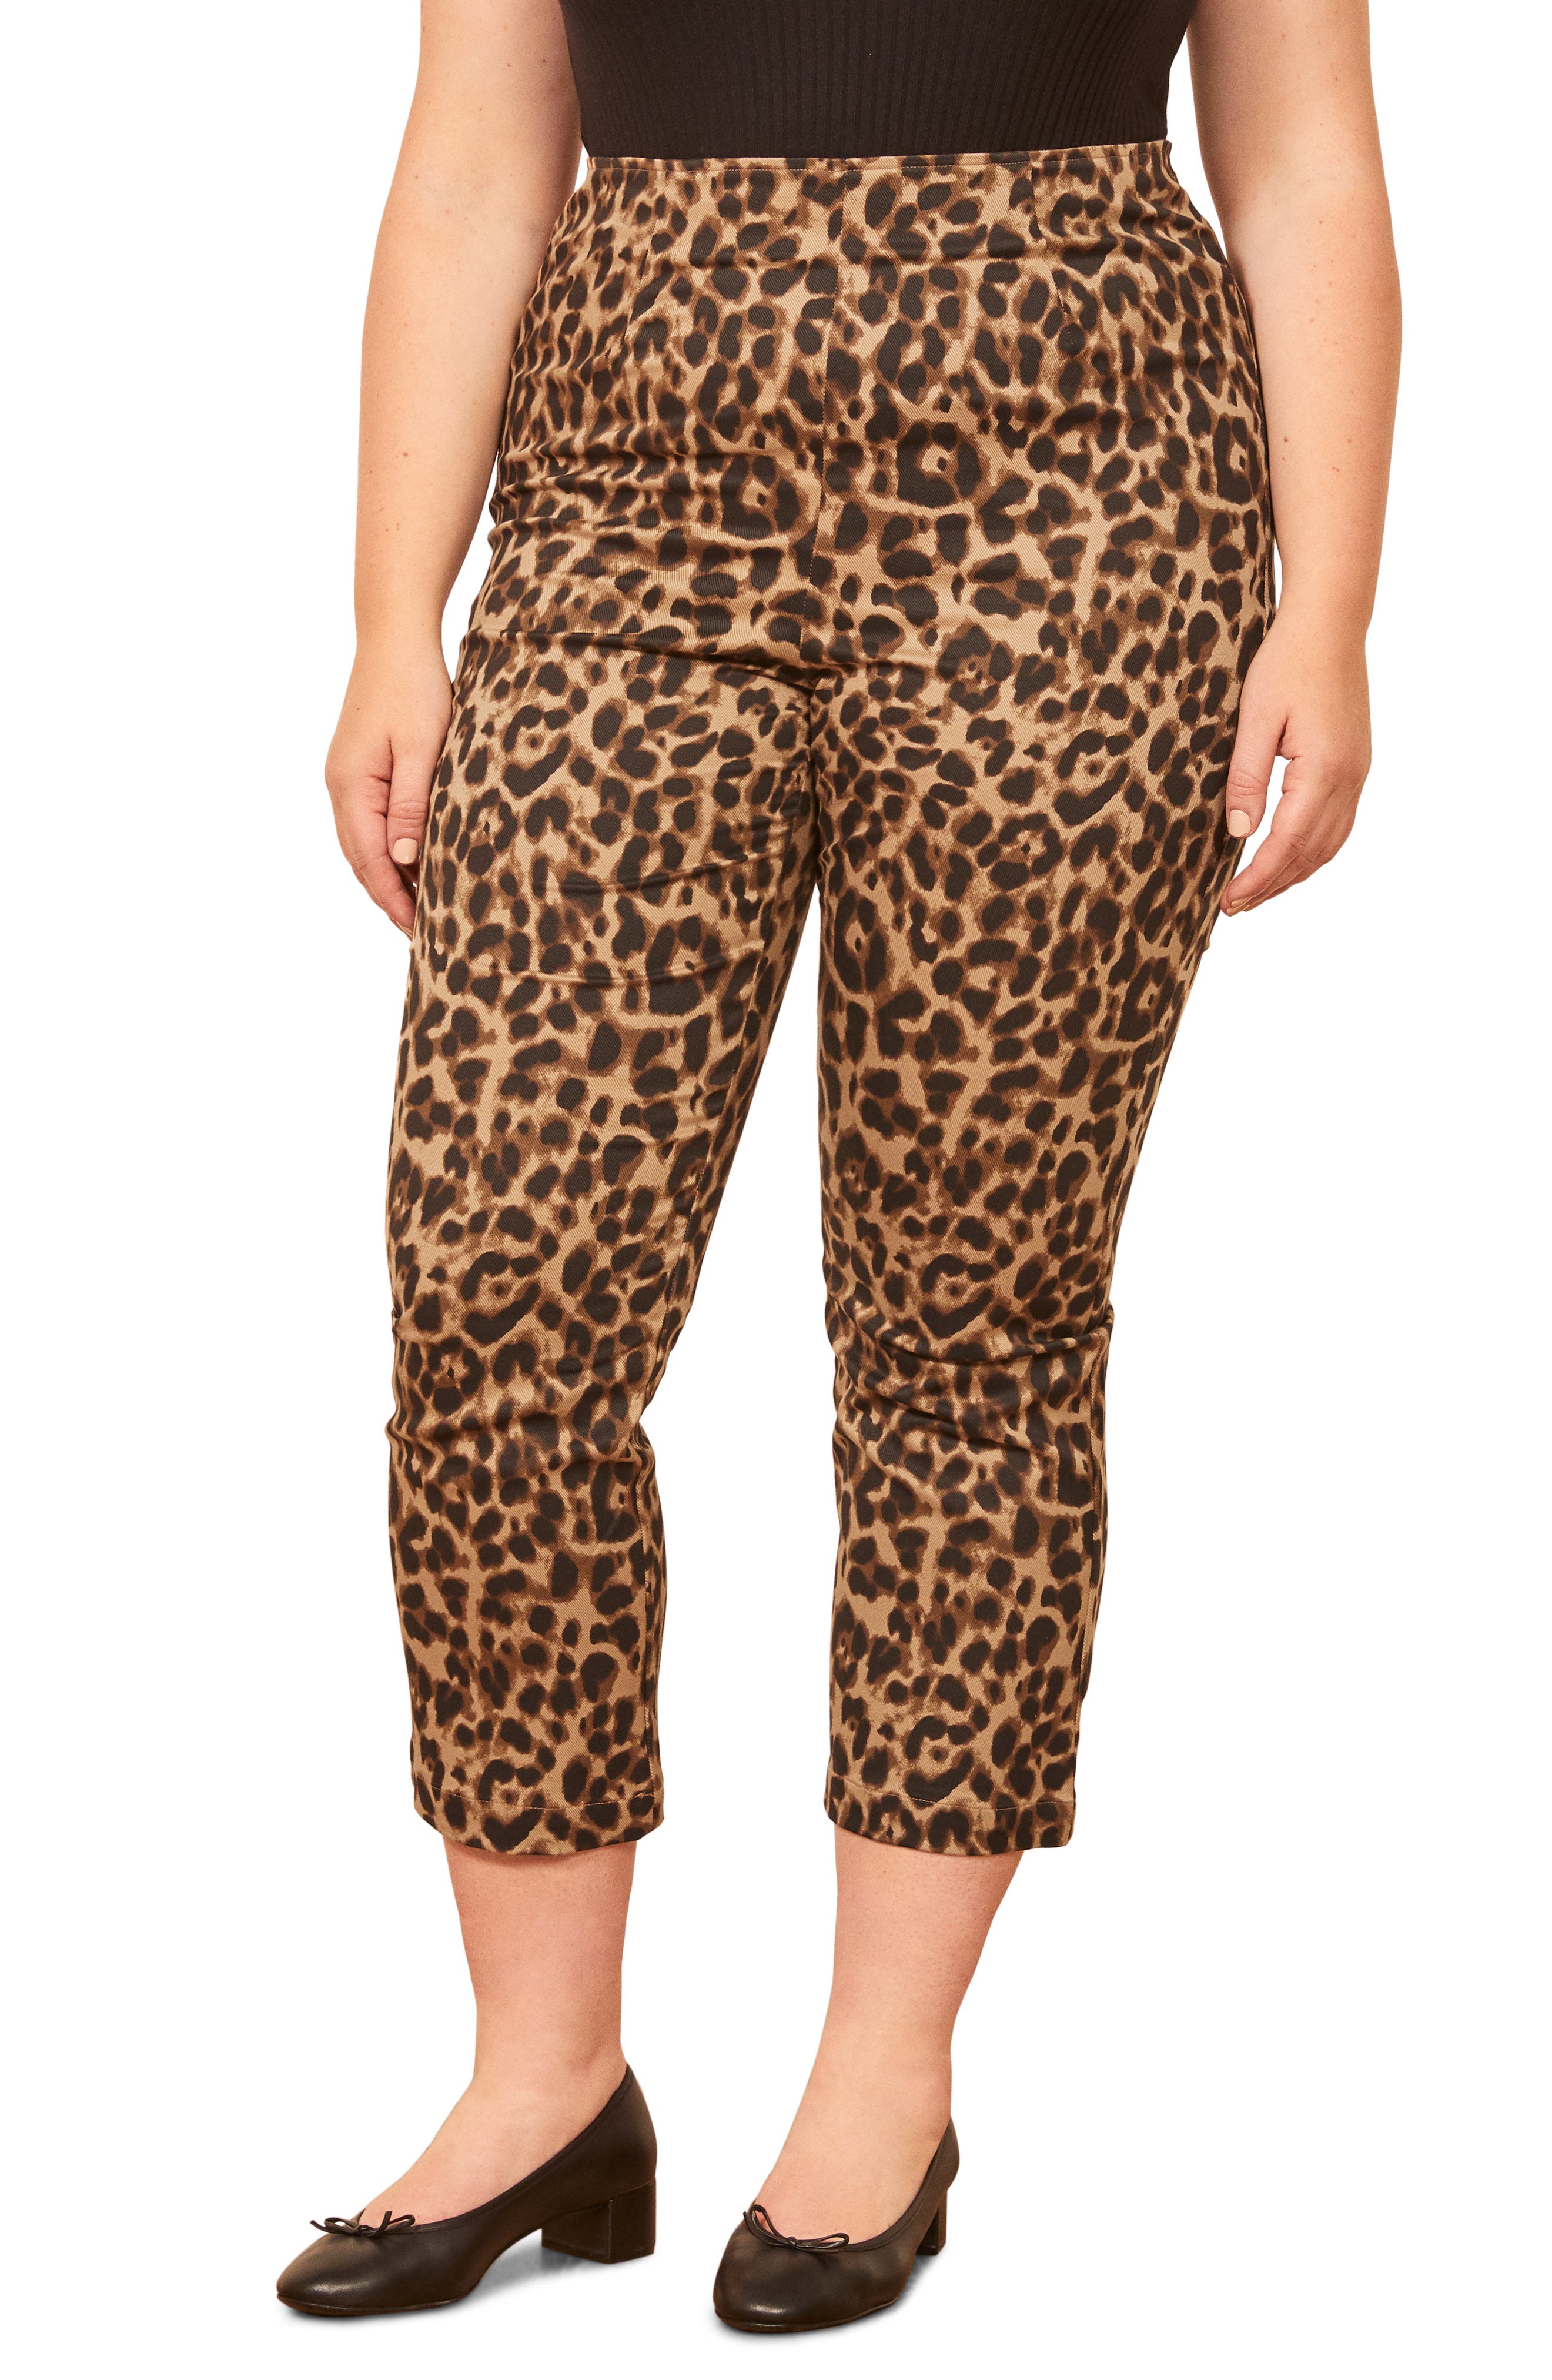 reformation leopard pants